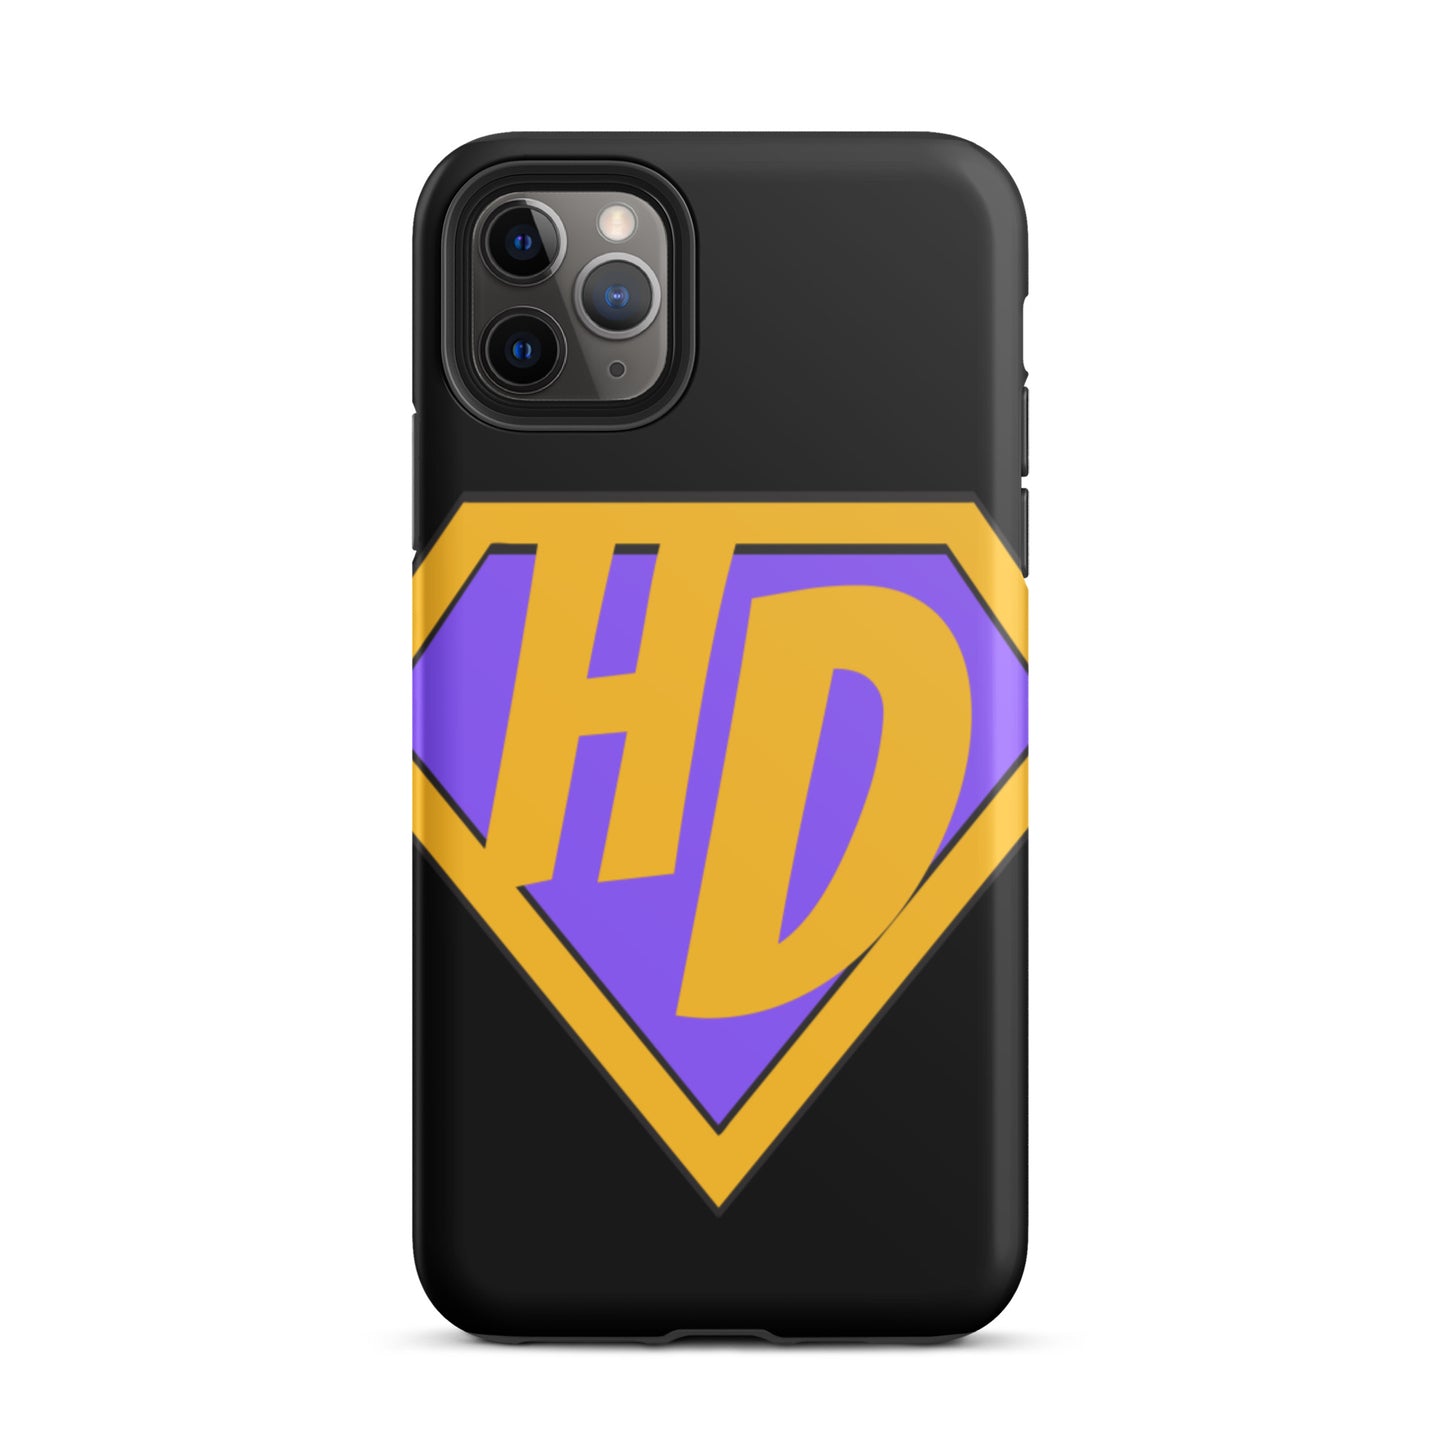 Super Dandy Tough iPhone case